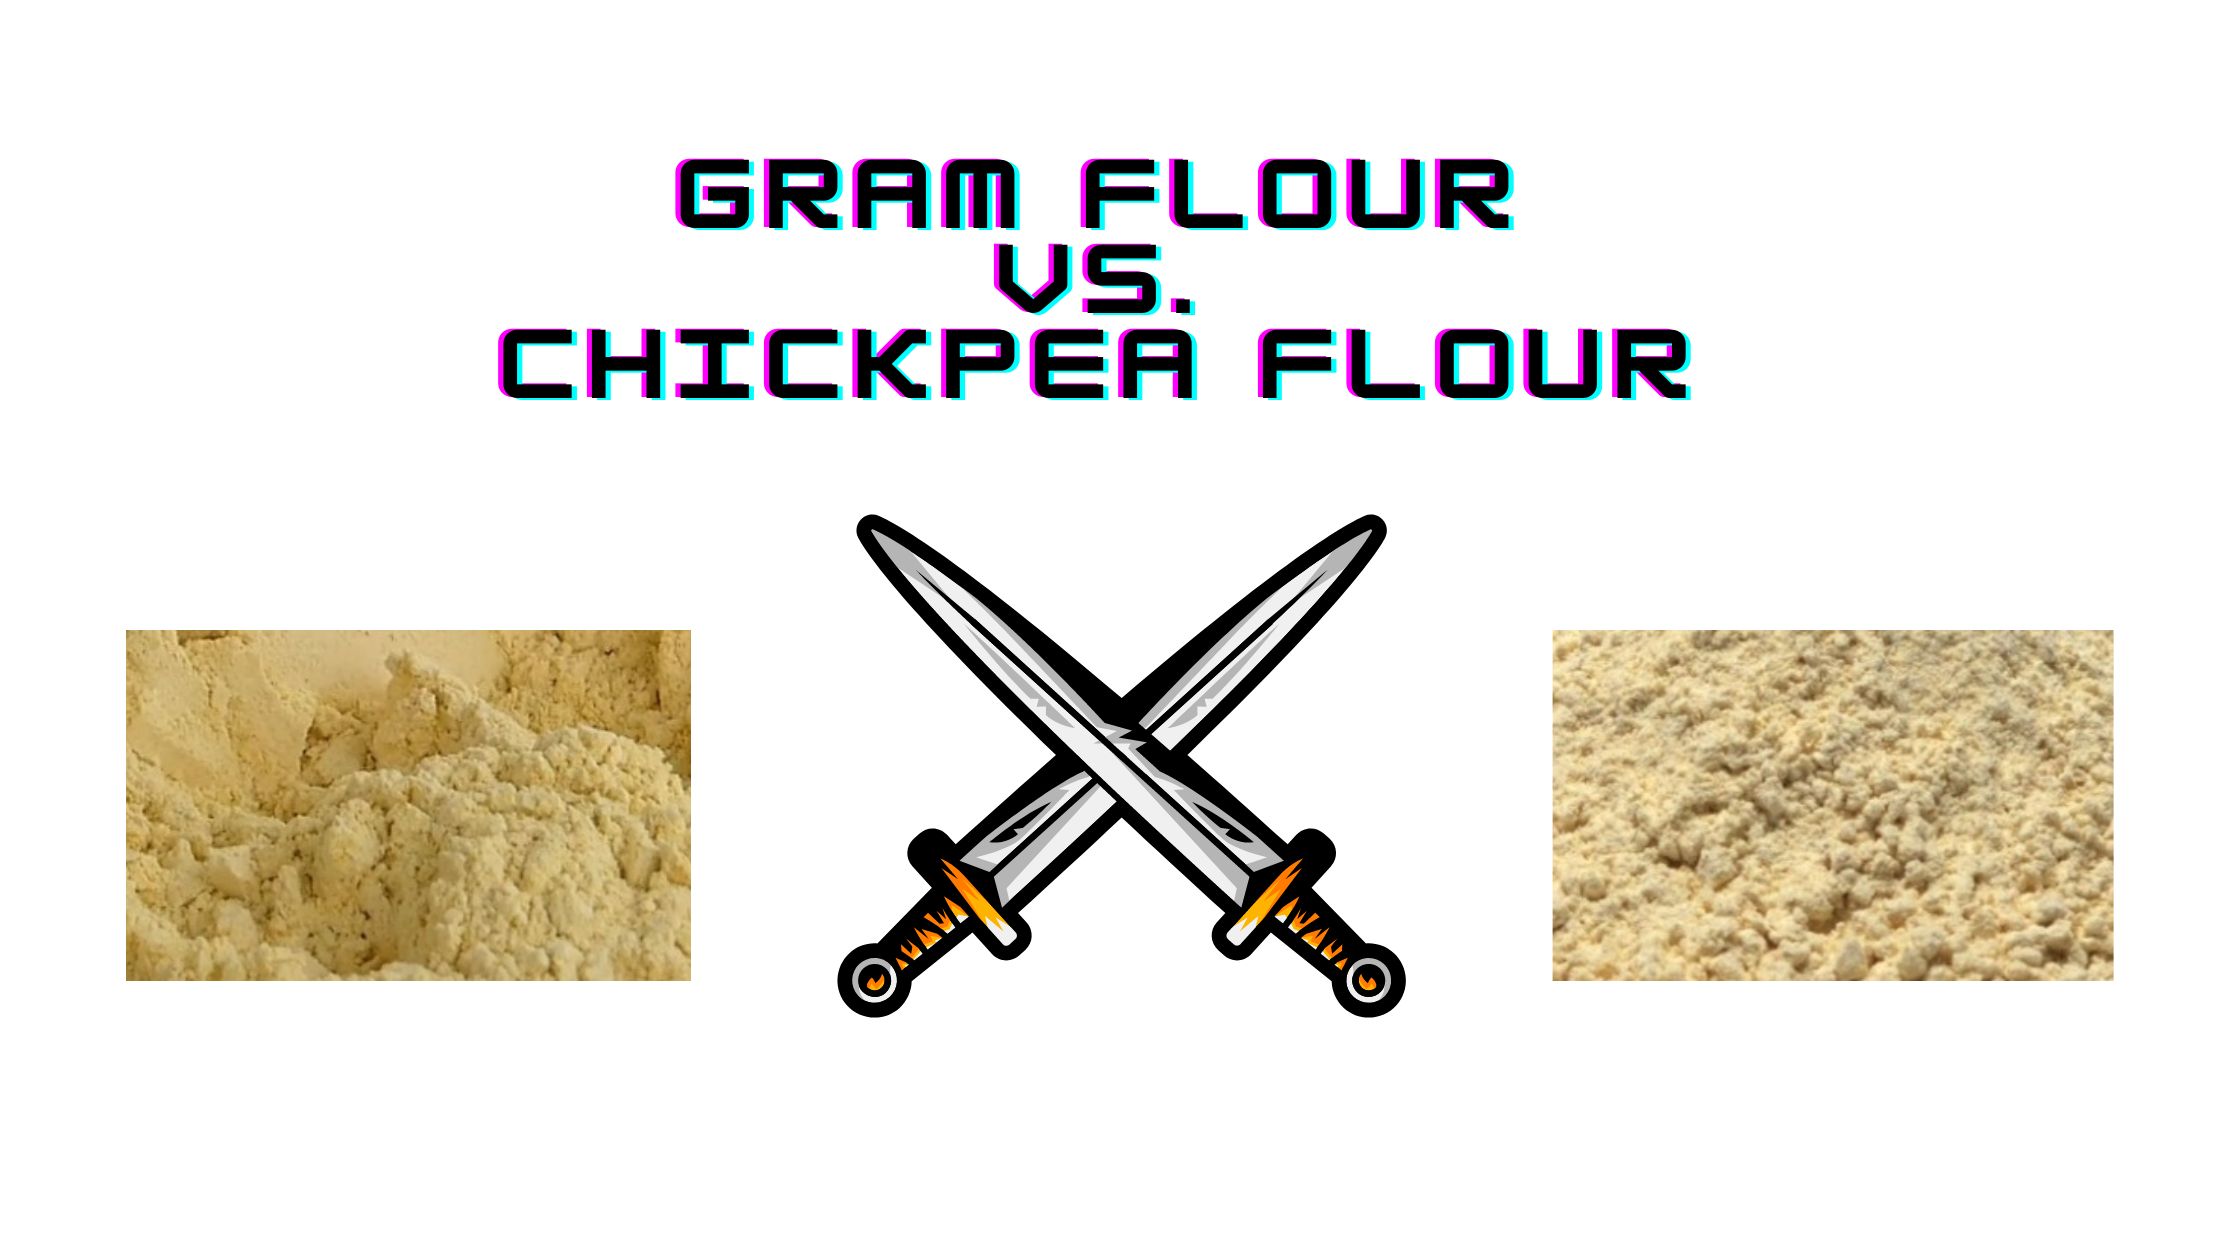 Is chickpea flour the same as gram flour